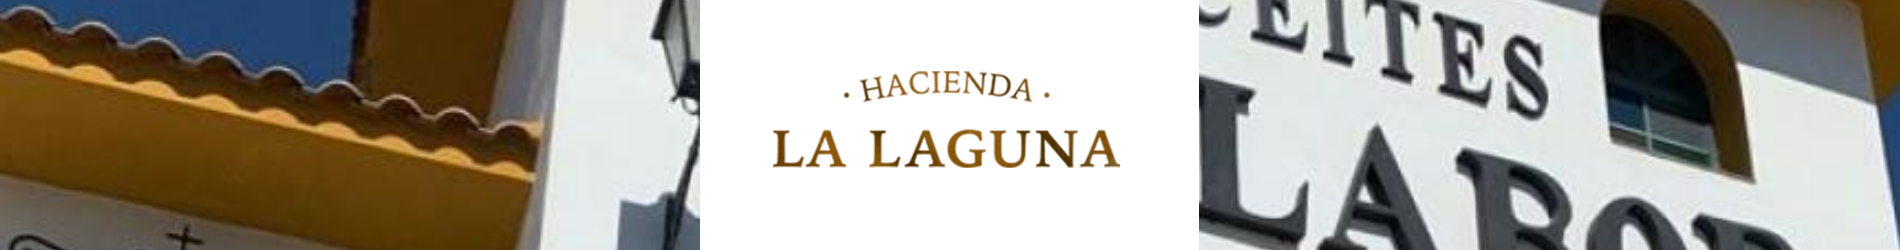 banner_hacienda_la_laguna